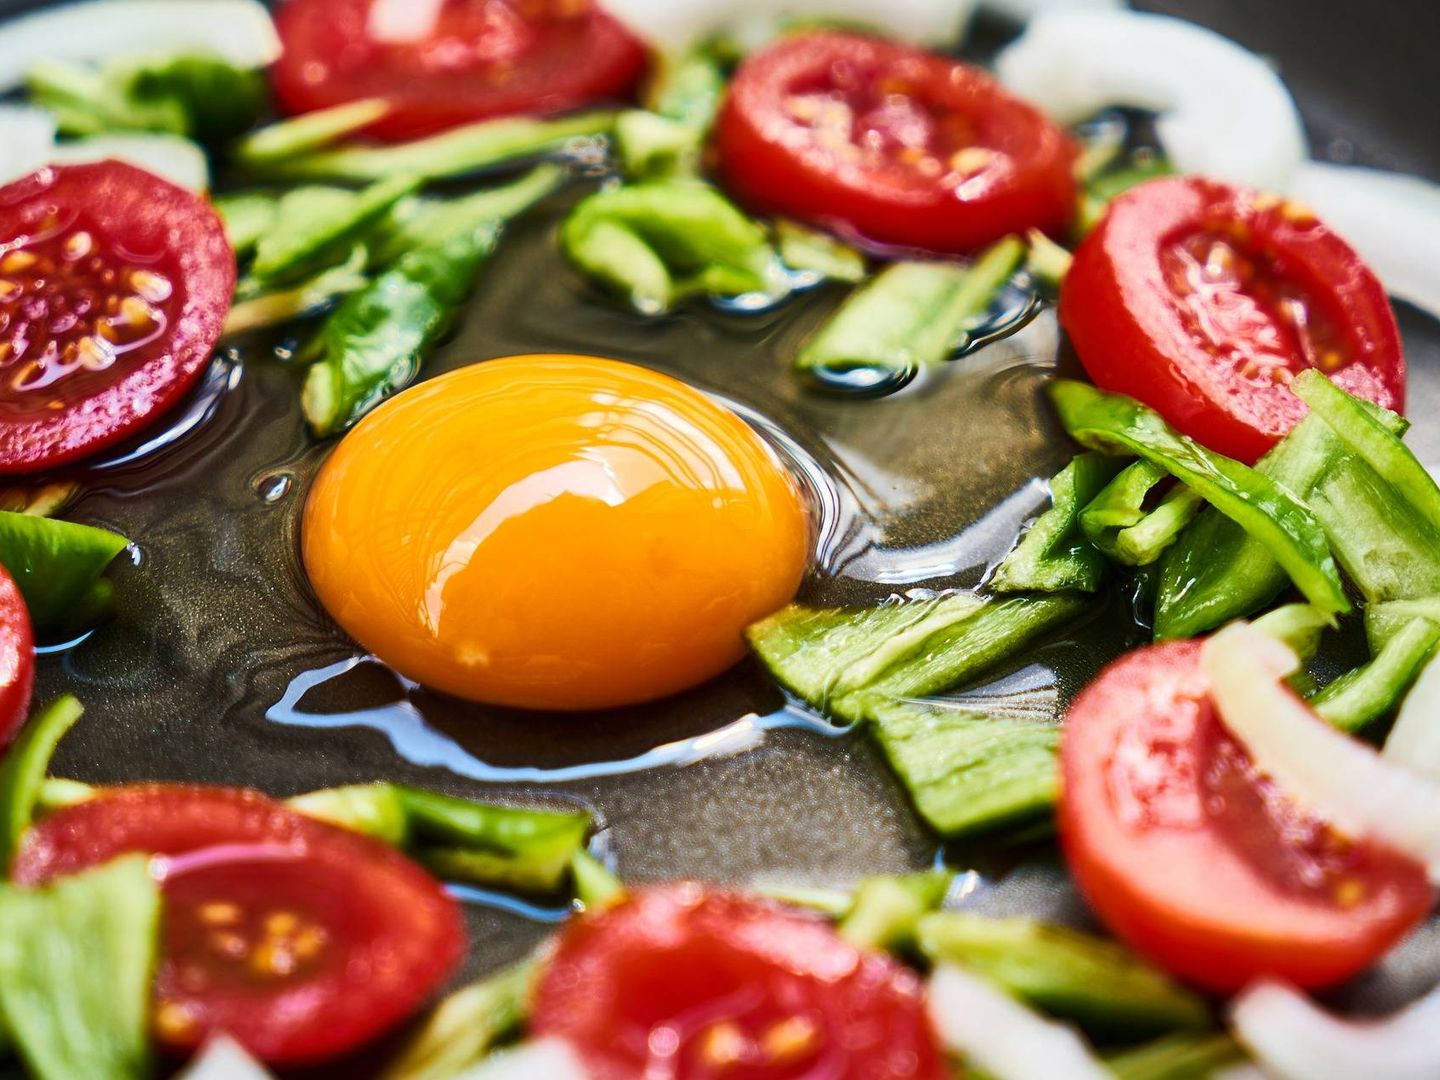 El huevo causa el 23% de las toxiinfecciones alimentarias por salmonela en verano.